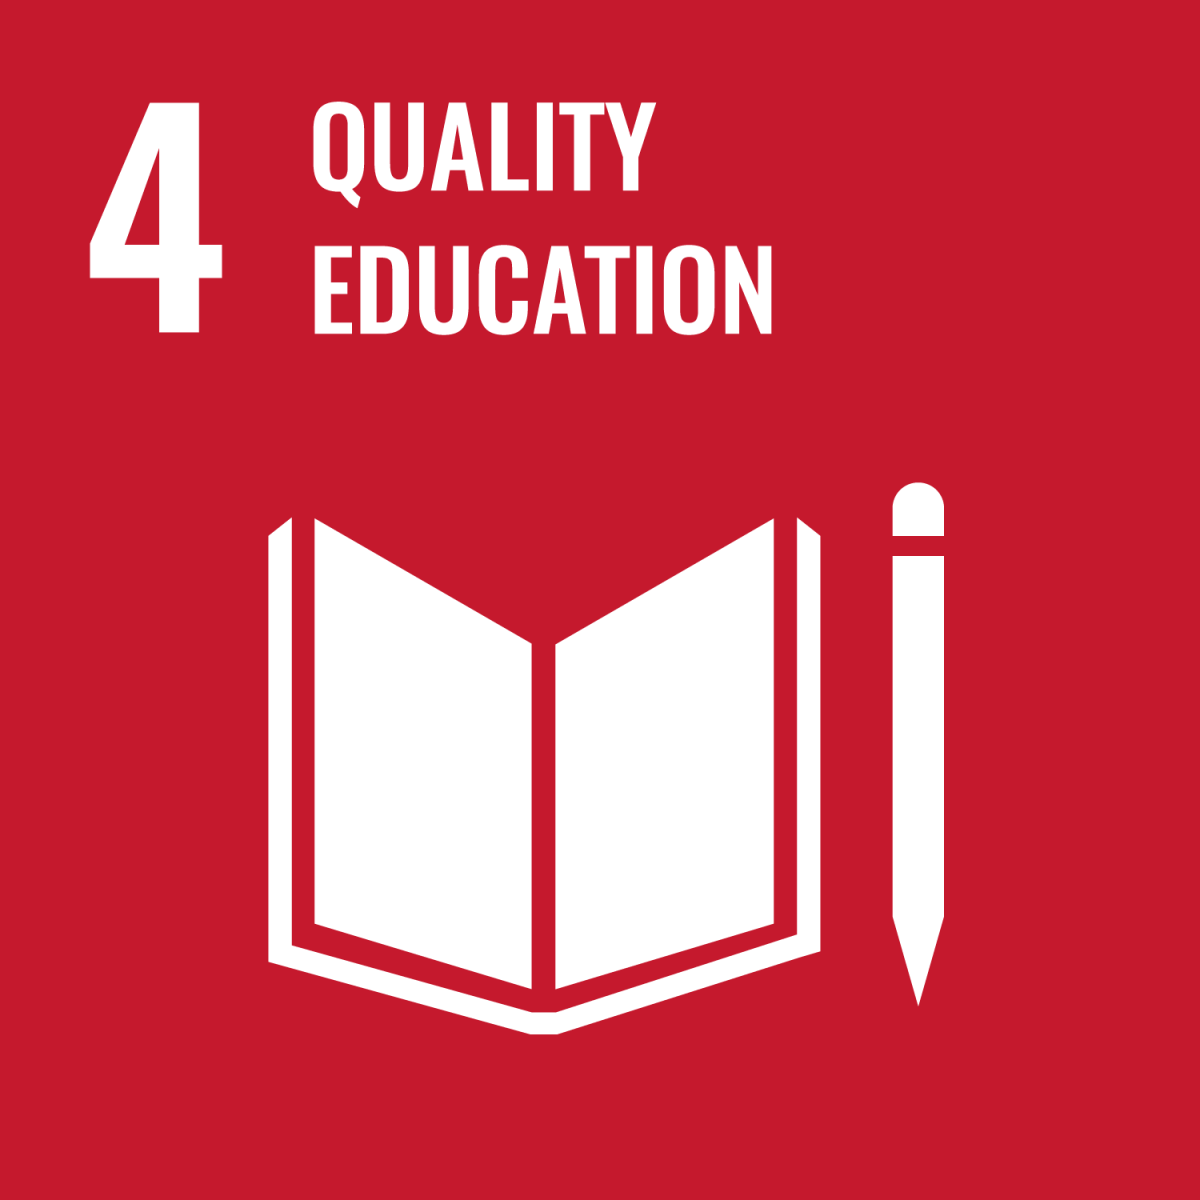 Shows UN SDG 4 - Quality Education 